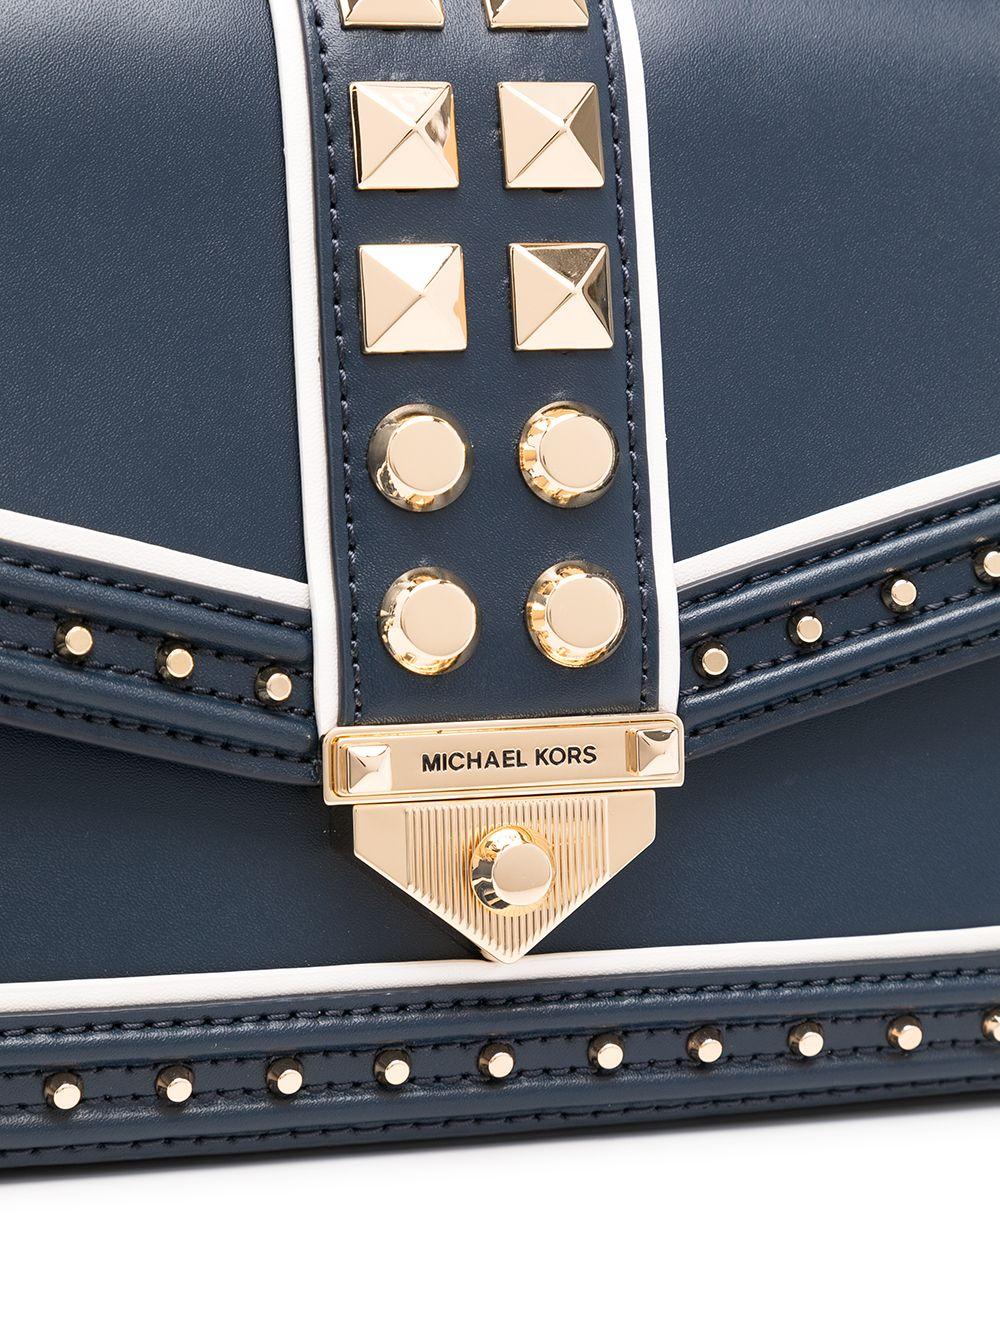 Michael Michael Kors Blue Leather Studded Top Handle Shoulder Bag